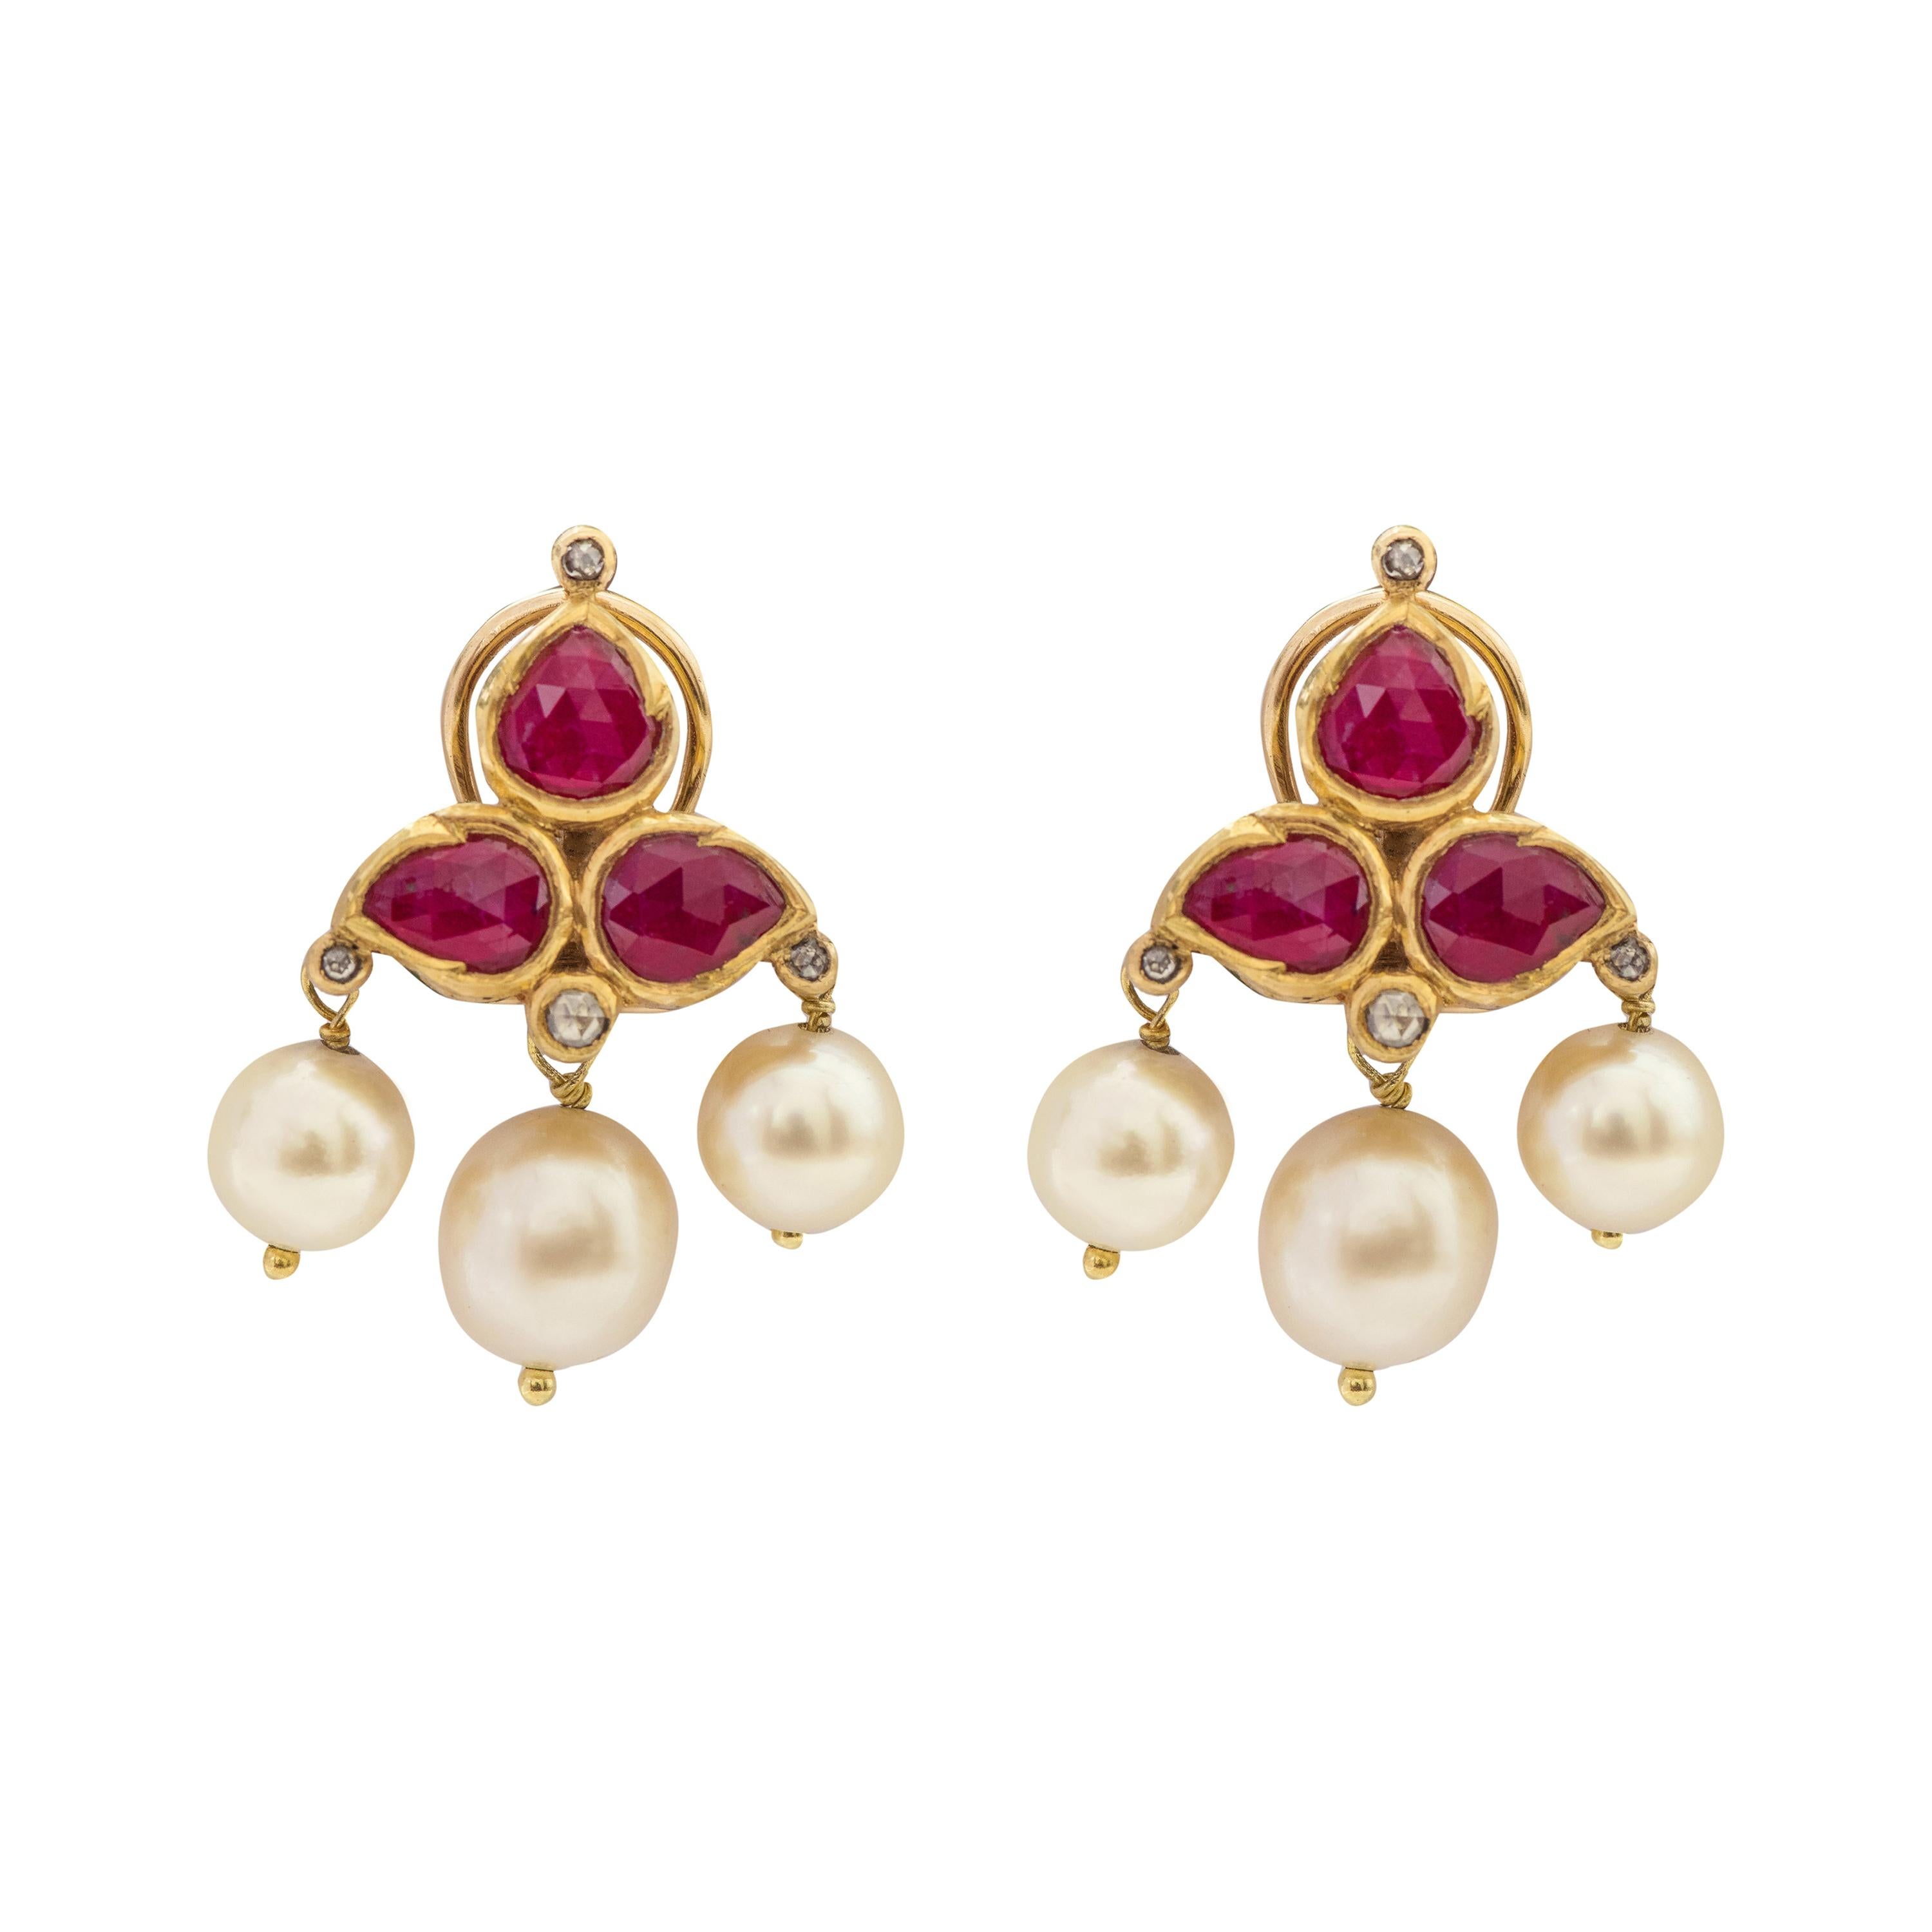 Clous d'oreilles en or 22 carats, rubis, diamants et perles, travail artisanal